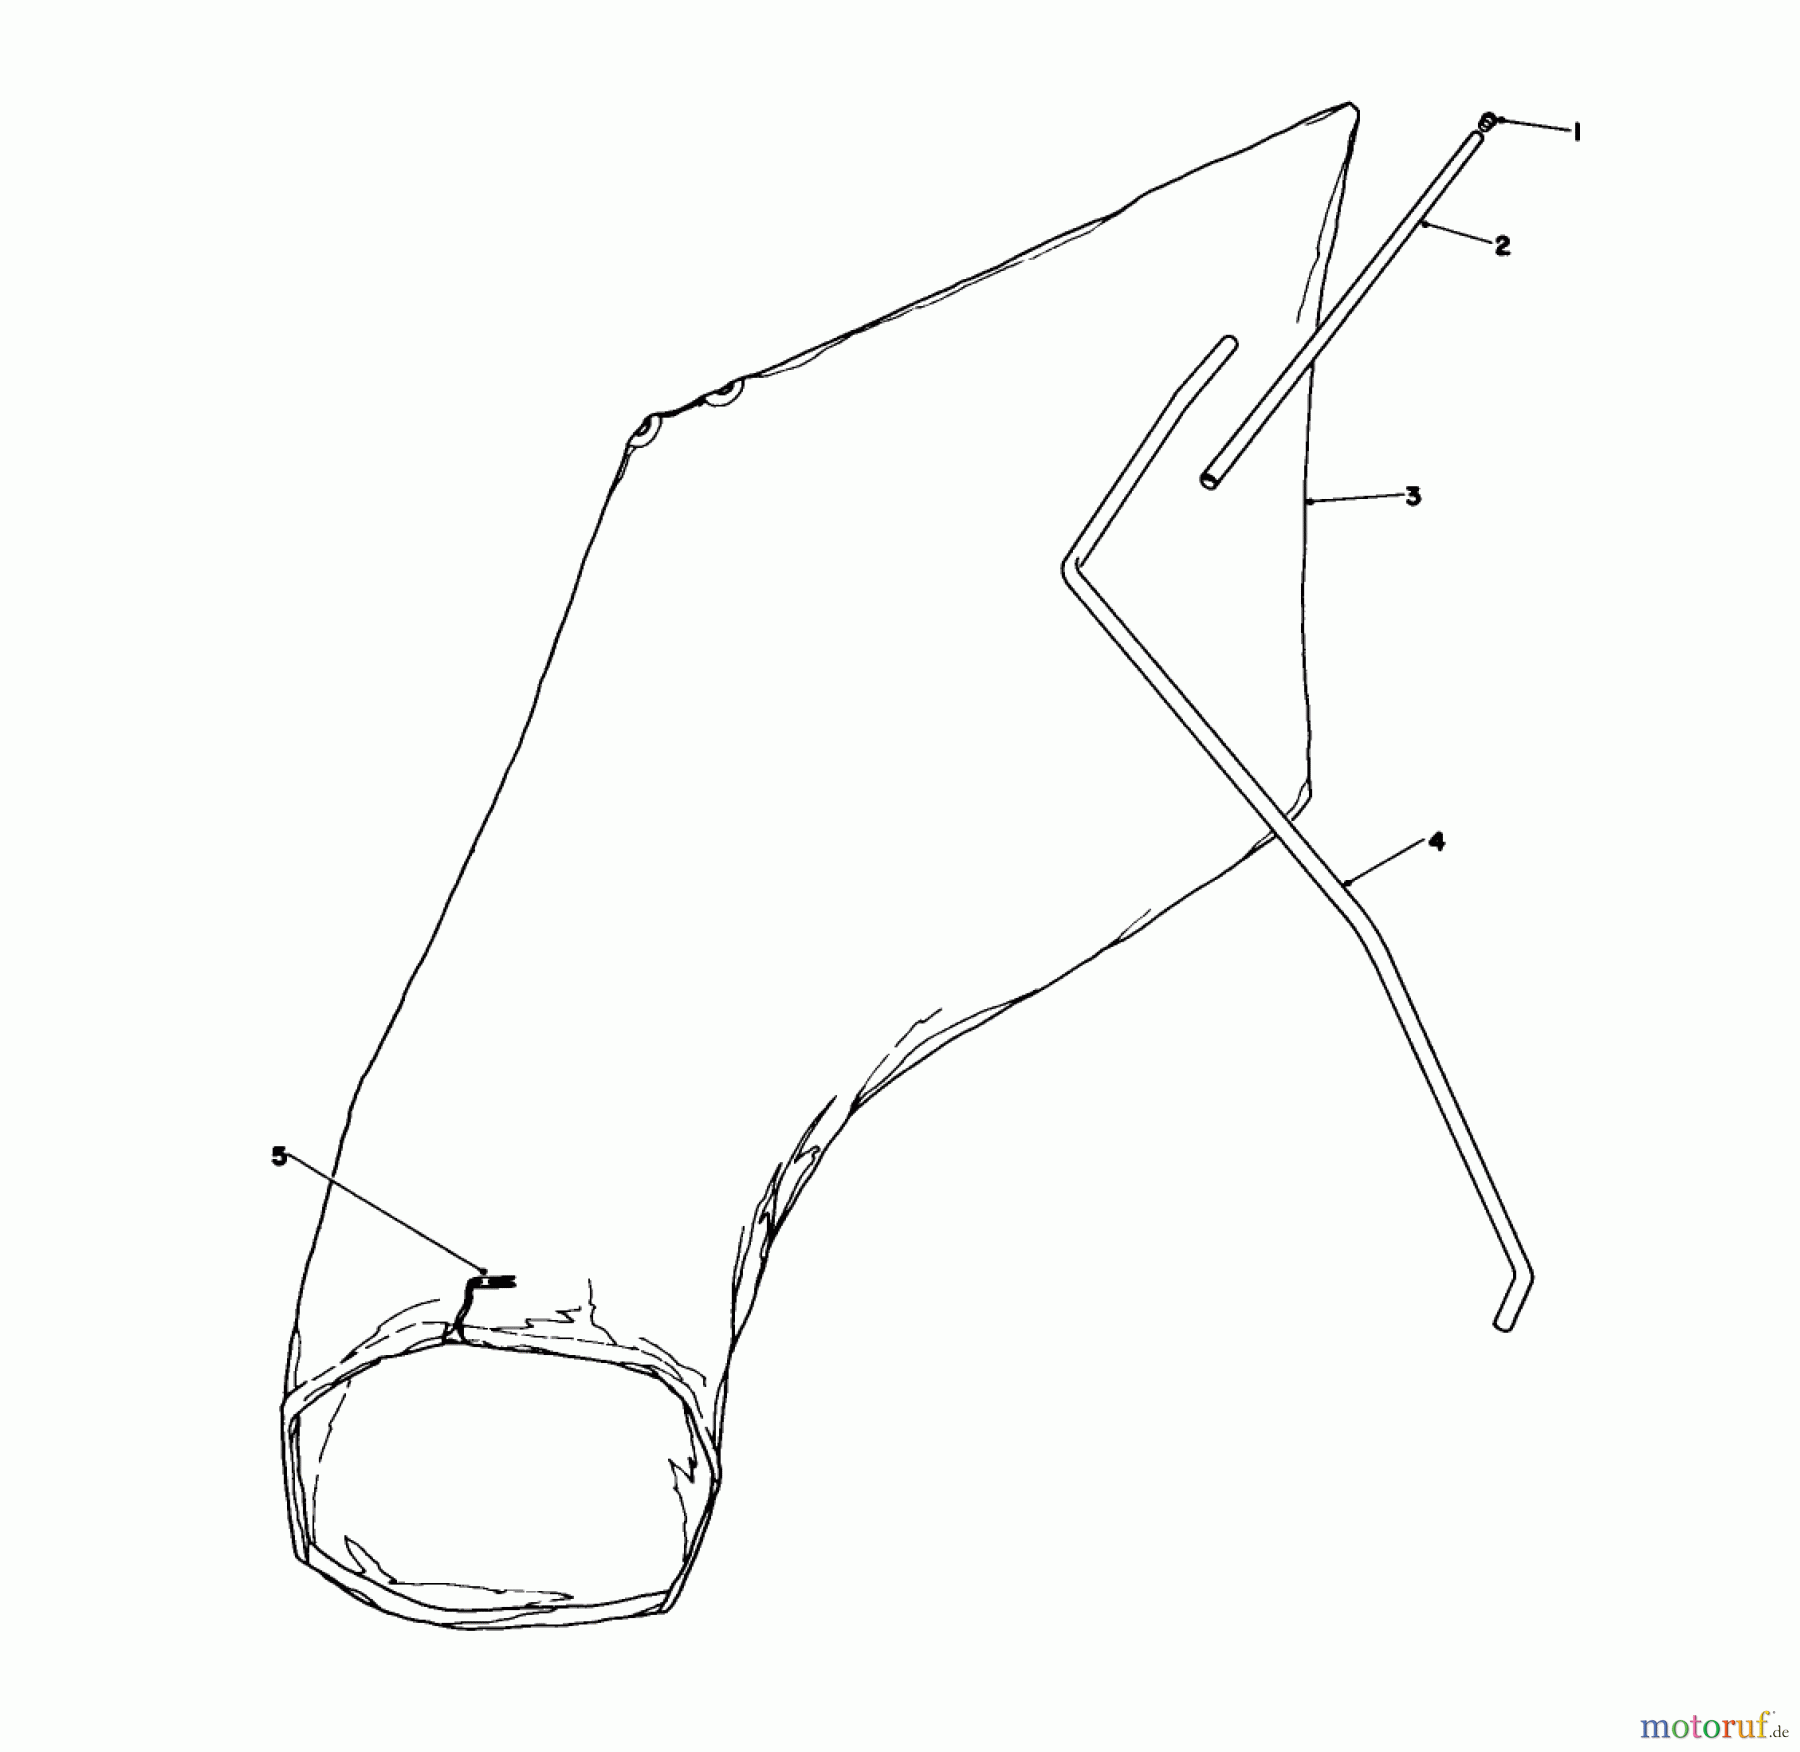  Toro Neu Mowers, Walk-Behind Seite 1 16575C - Toro Lawnmower, 1988 (8000001-8999999) GIANT BAGGING KIT NO. 29-9750 (OPTIONAL)